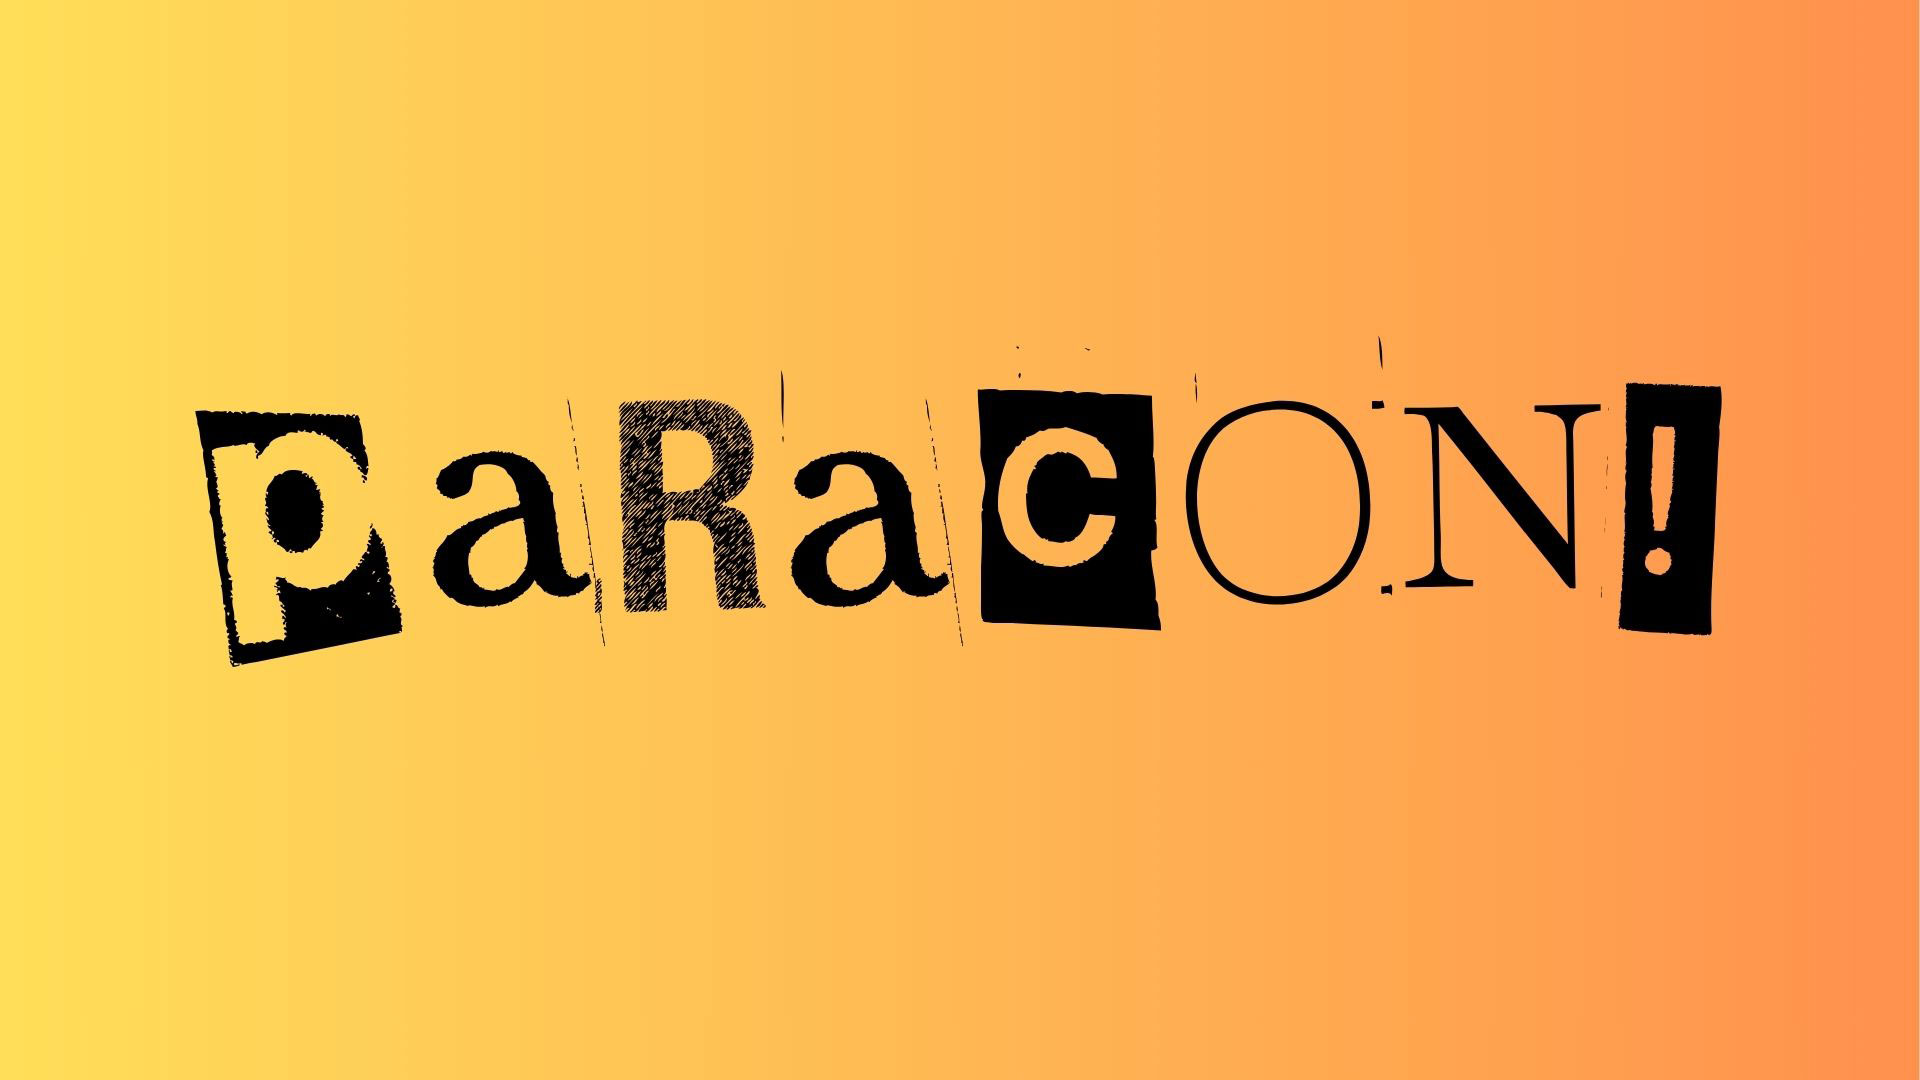 ParaCon!